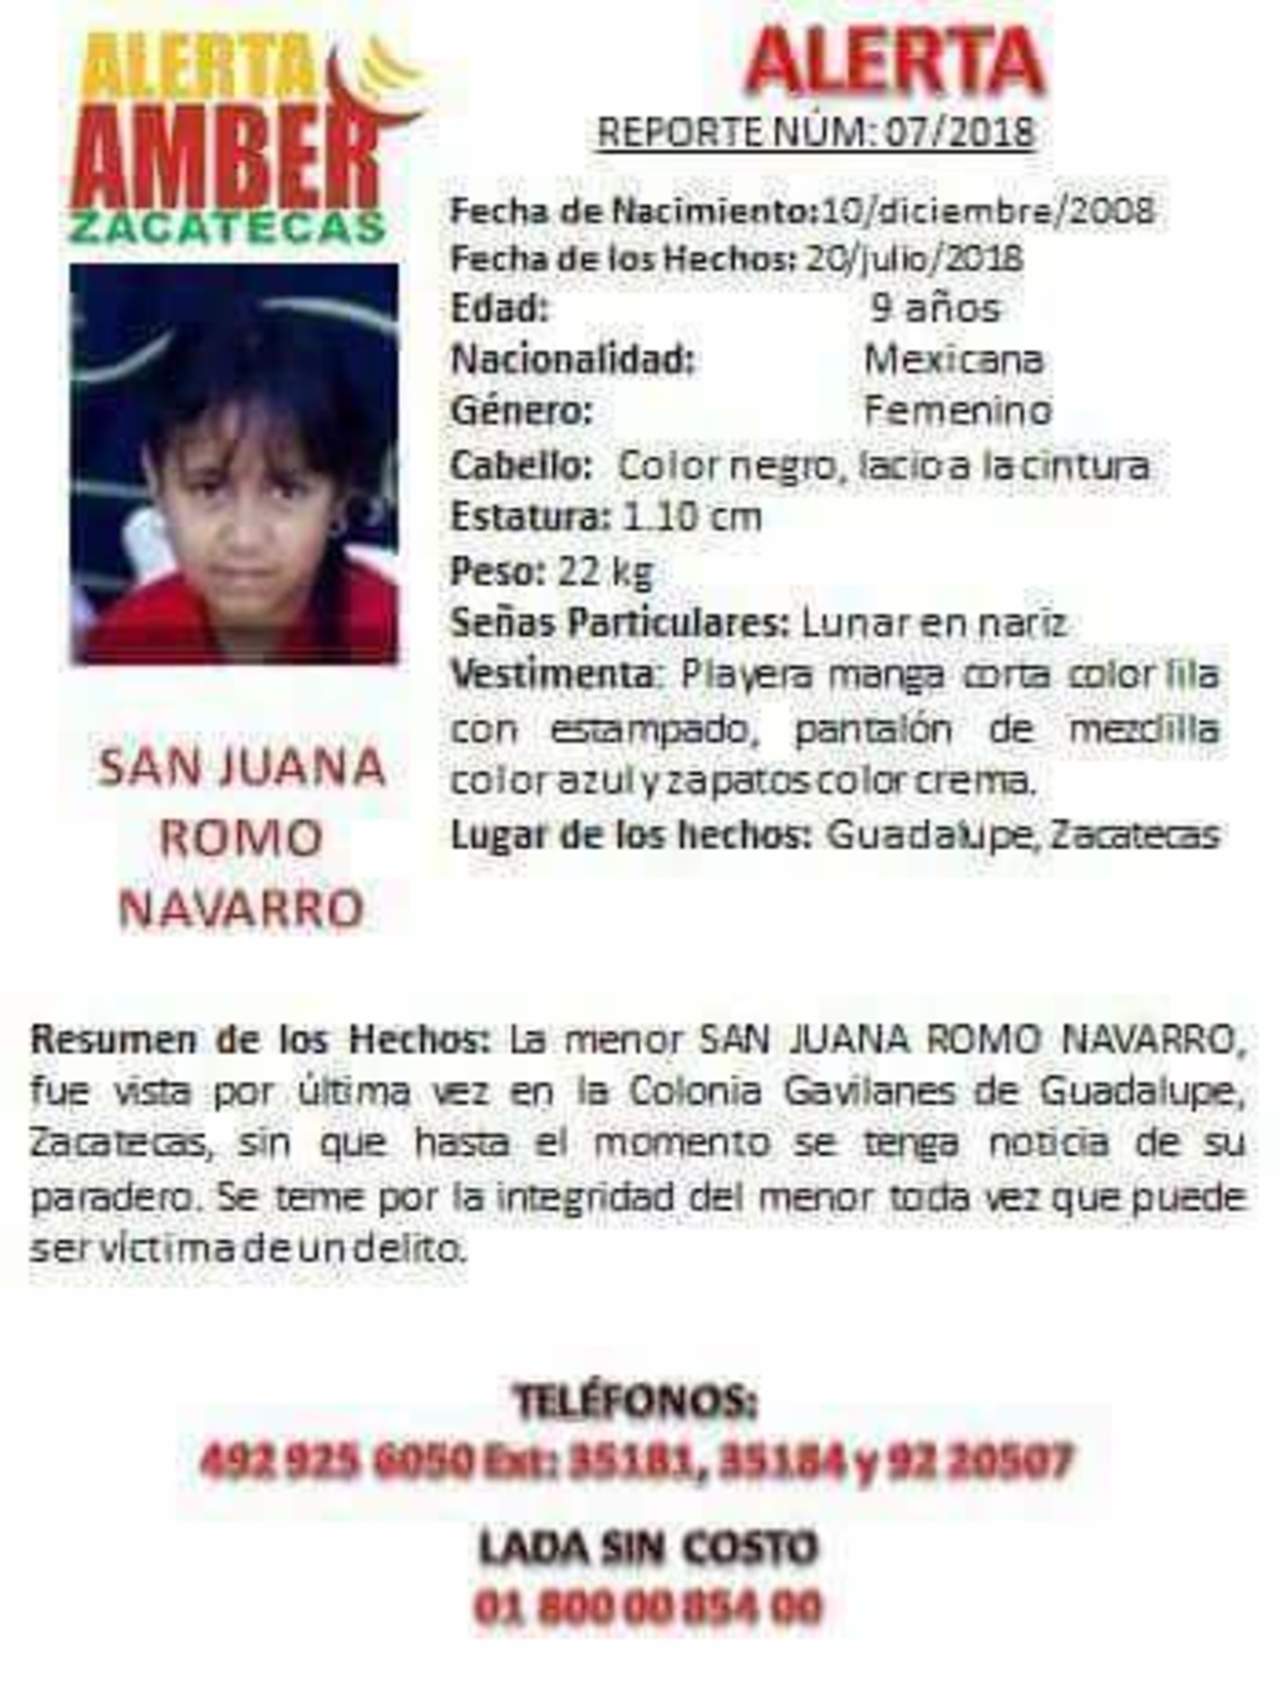 La niña San Juana Romo Navarro, había desaparecido el pasado viernes 20 de julio cuando salió a la tienda. (TWITTER)